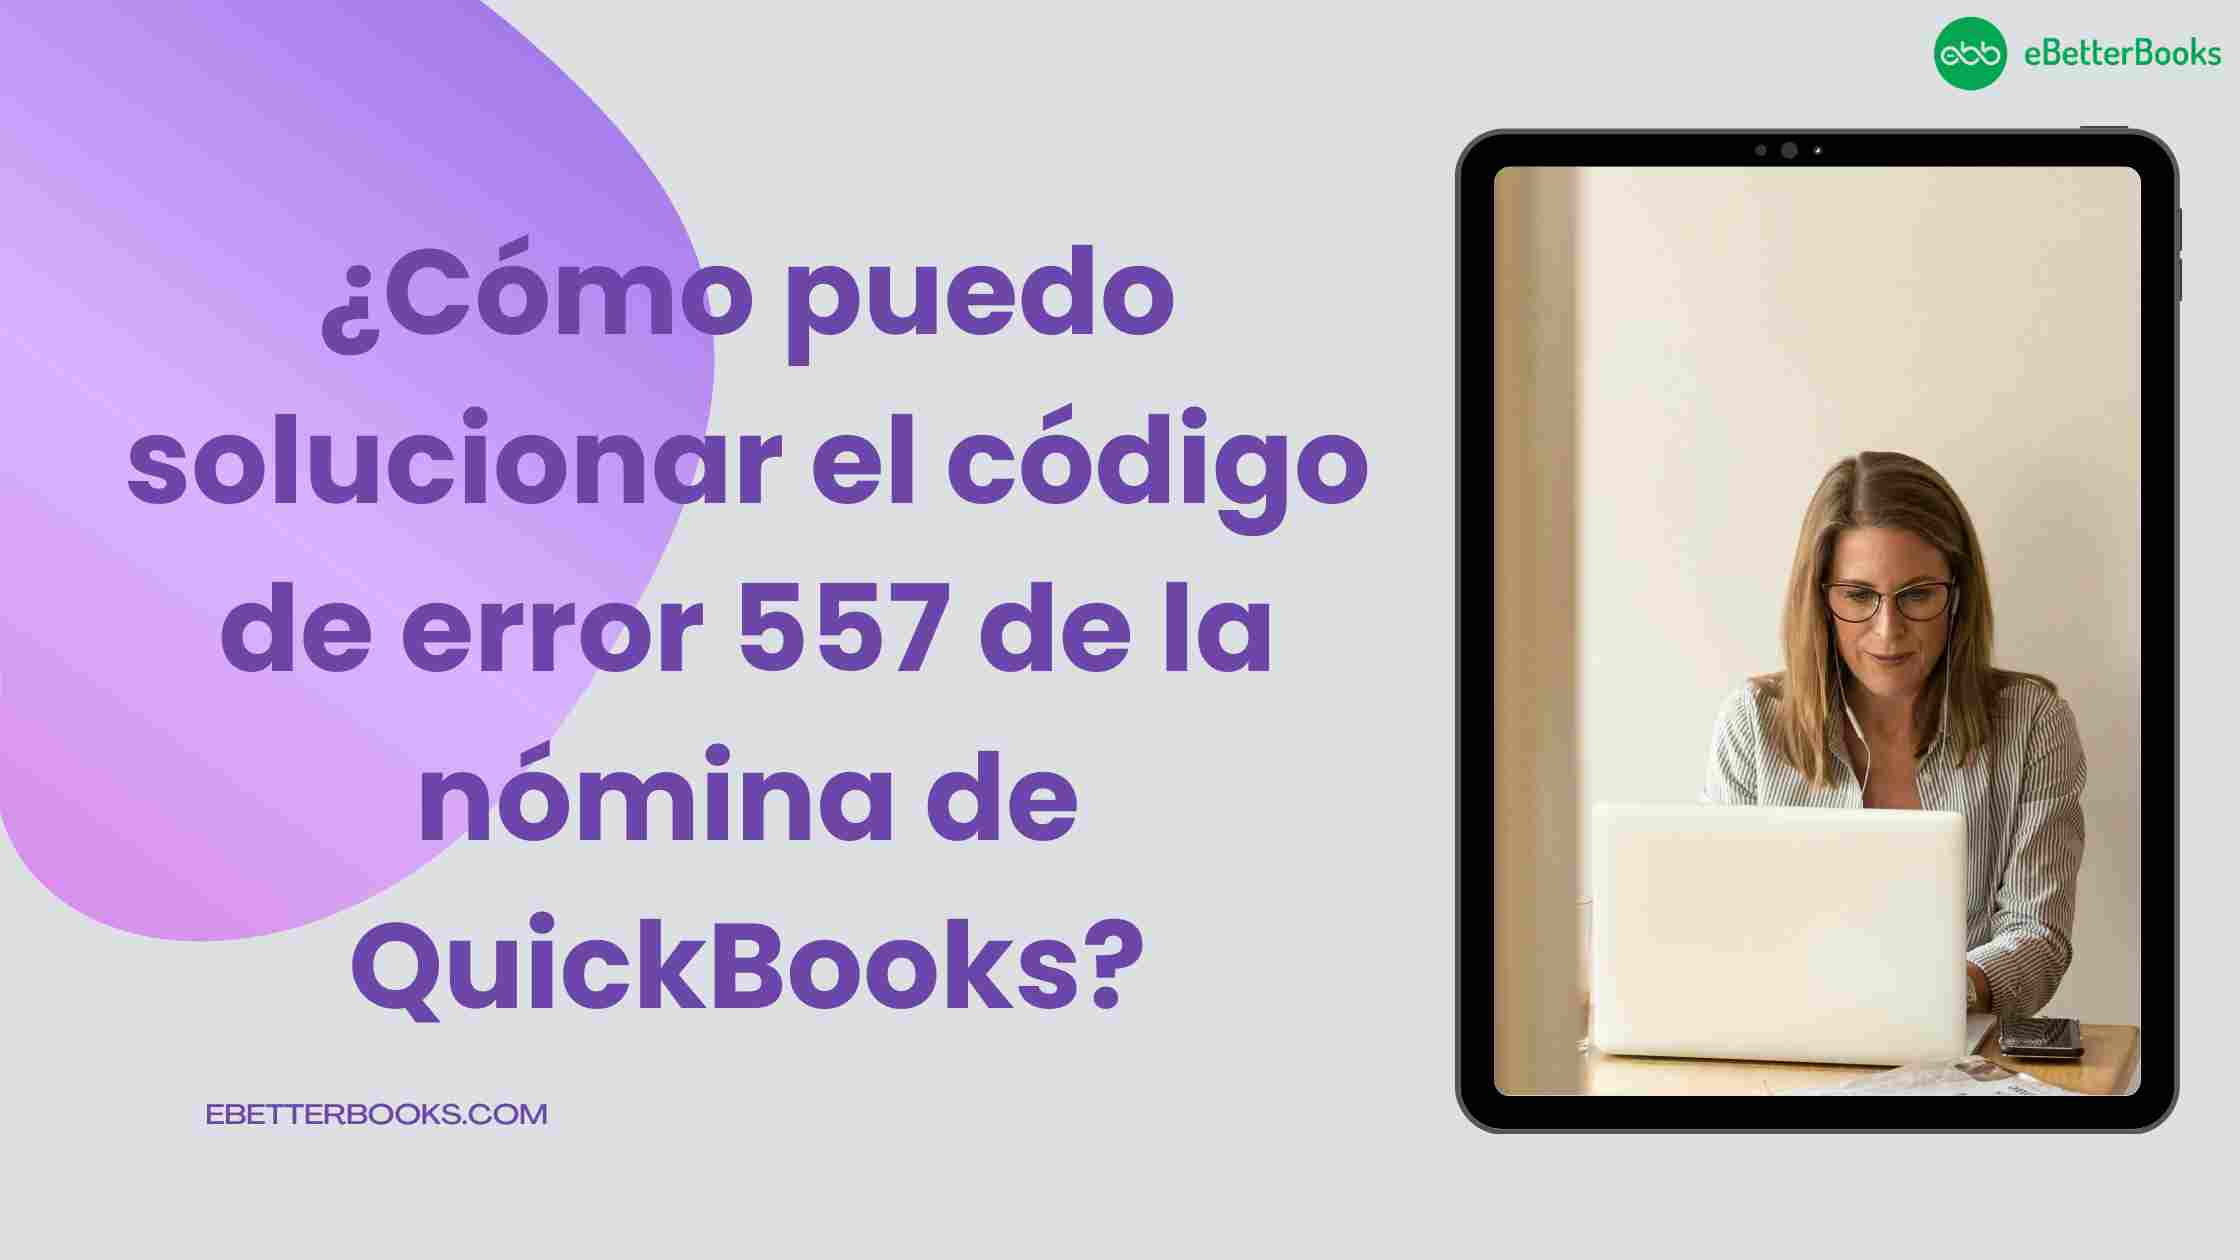 ¿Cómo puedo solucionar el código de error 557 de la nómina de QuickBooks?